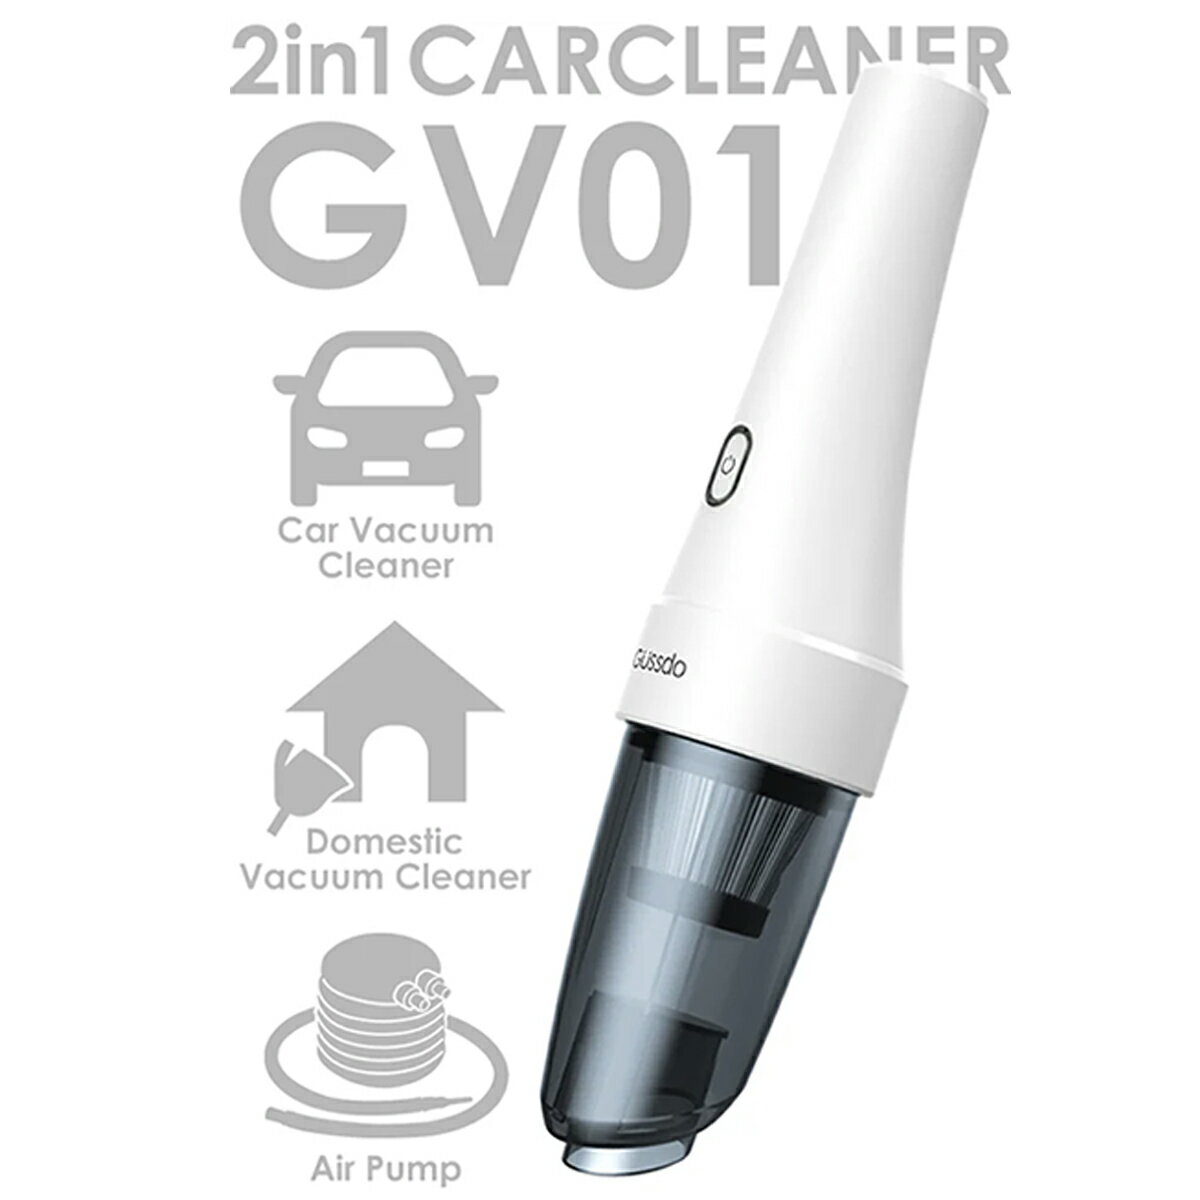 2in1カークリーナーGV01 大容量バッテリー 長時間連続稼働 ハイパワー強力吸引 洗えるフィルター ポータブル充電式 電動エアポンプ機能 超軽量 630g コンパクト お手入れ簡単 掃除機 空気入れ 8500pa